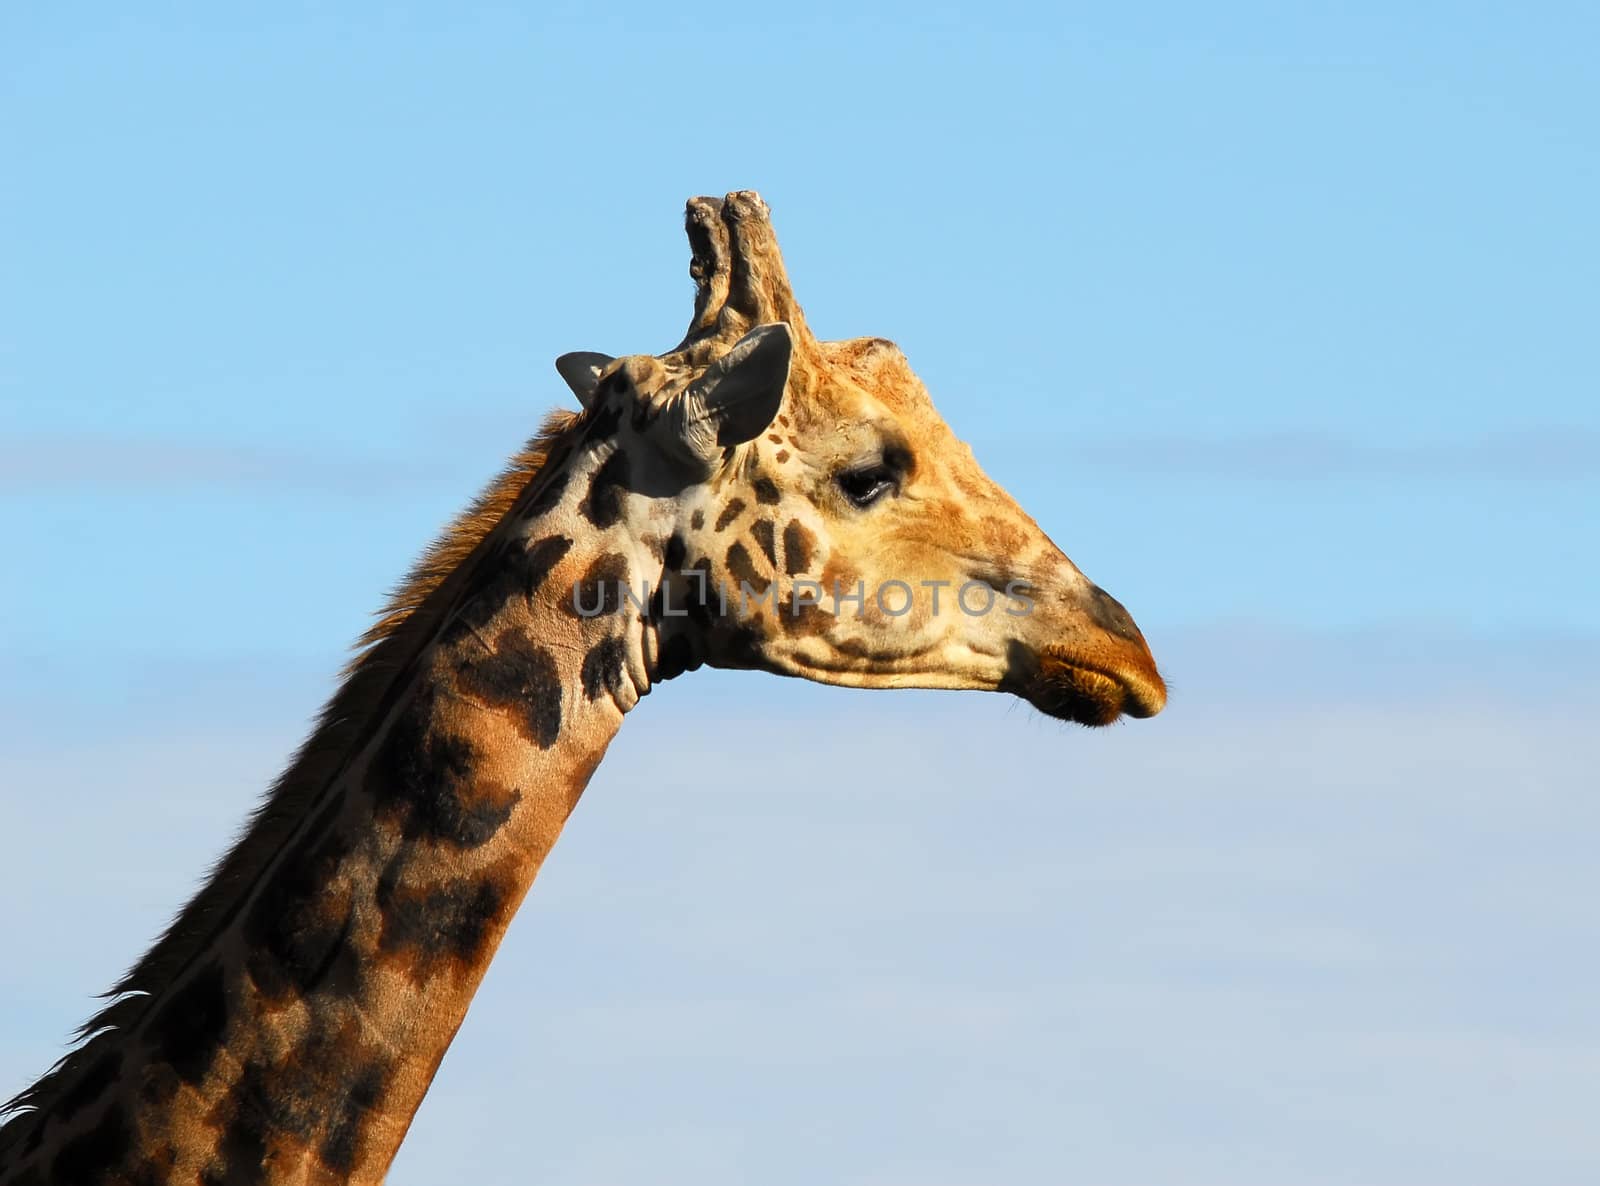 portrait of a Giraffe seen sideways